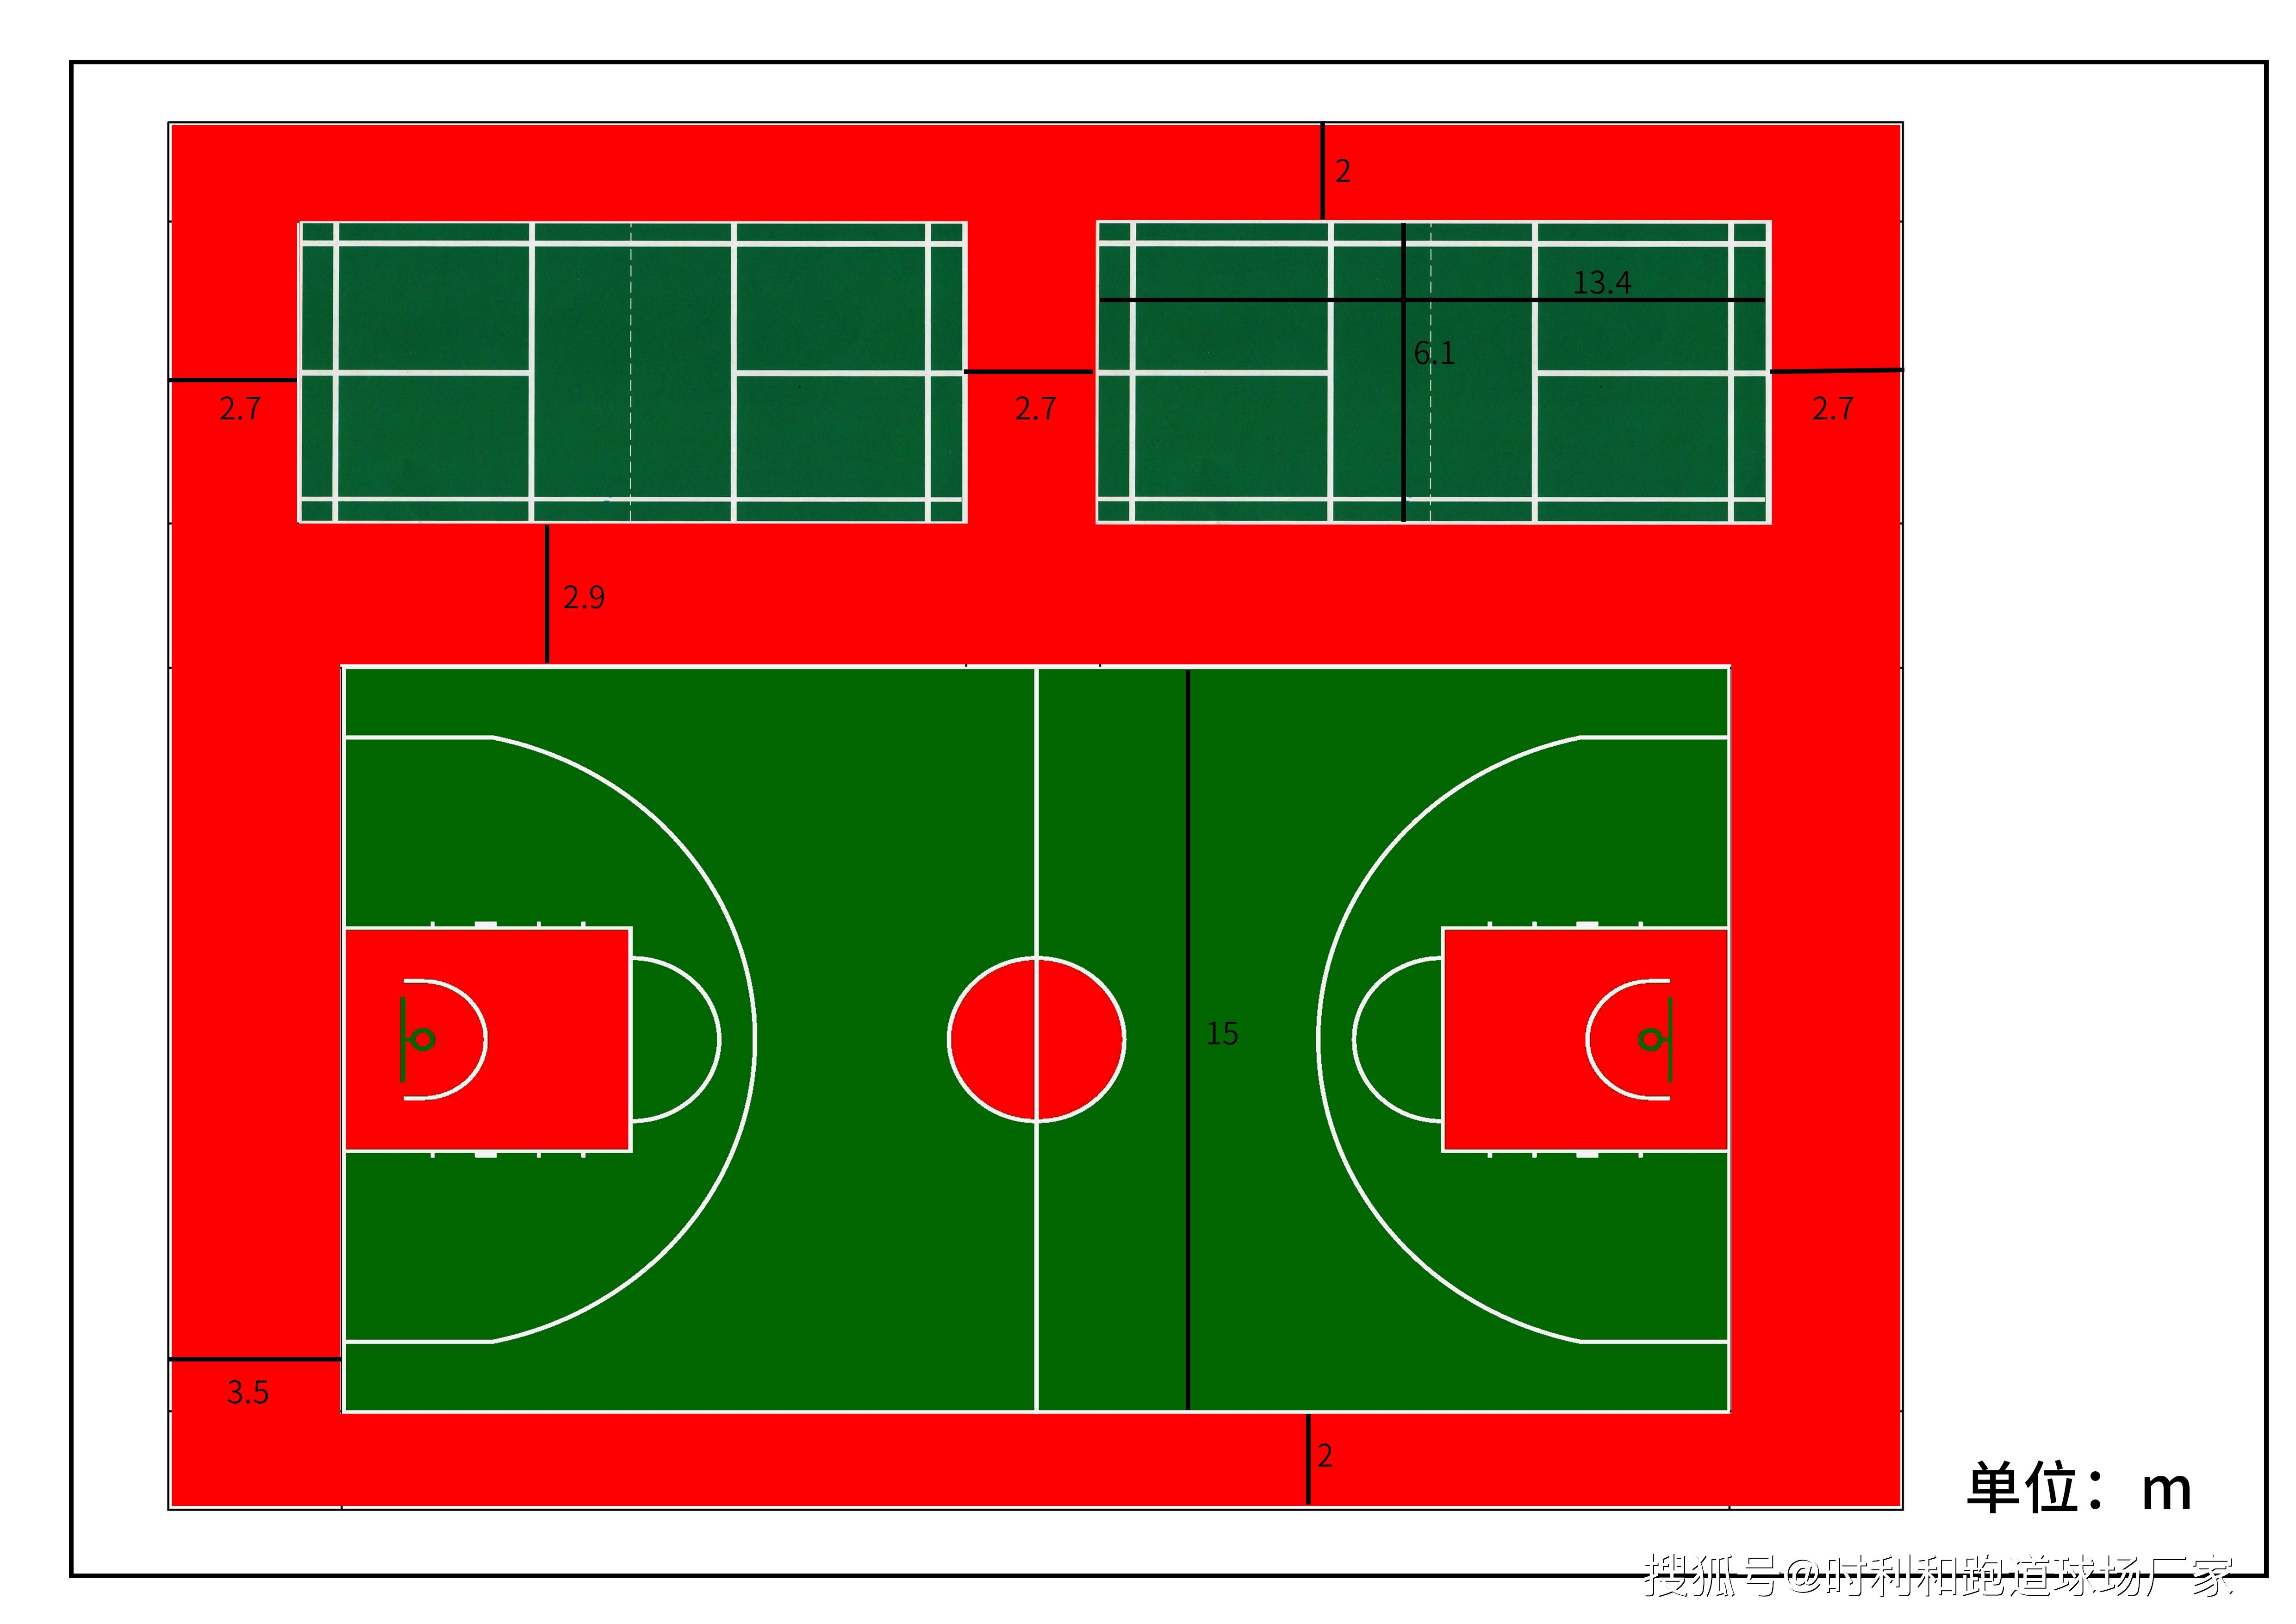 建一个塑胶篮球场有哪些材料可选